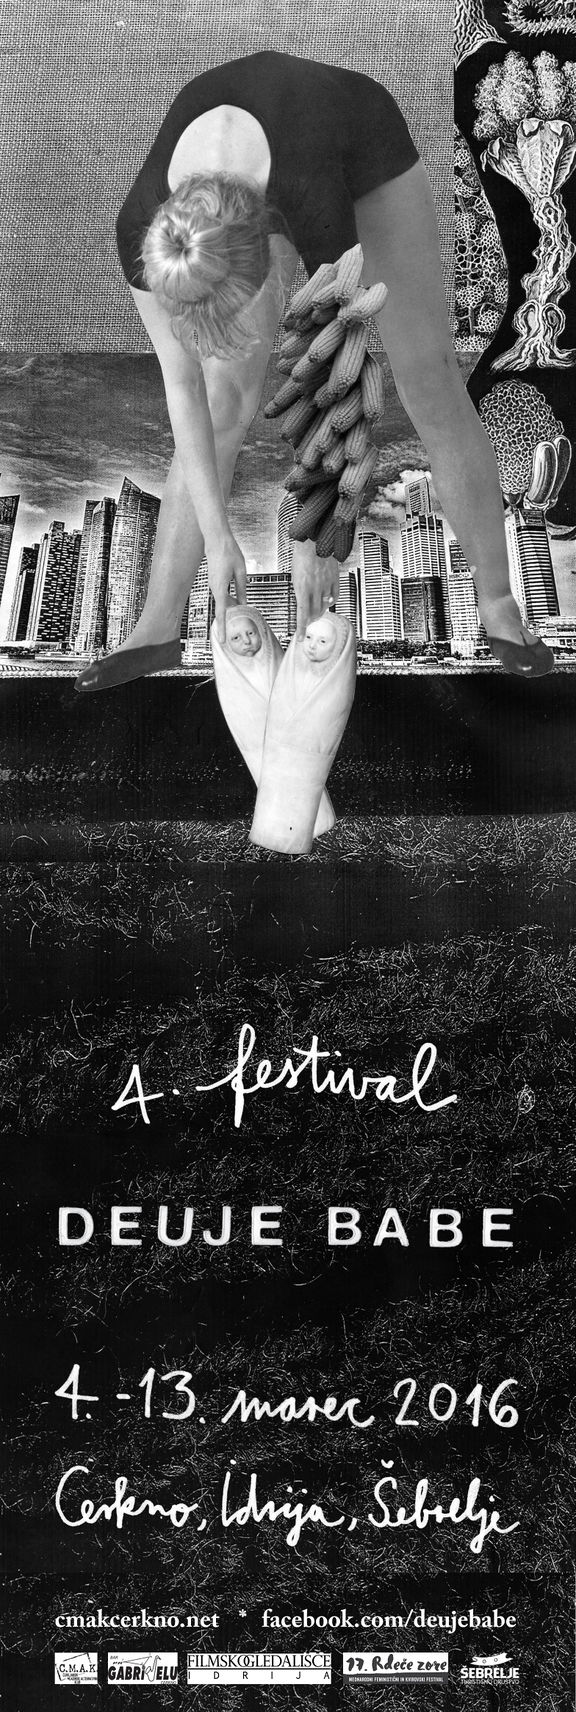 Deuje babe Festival 2016 poster.jpg